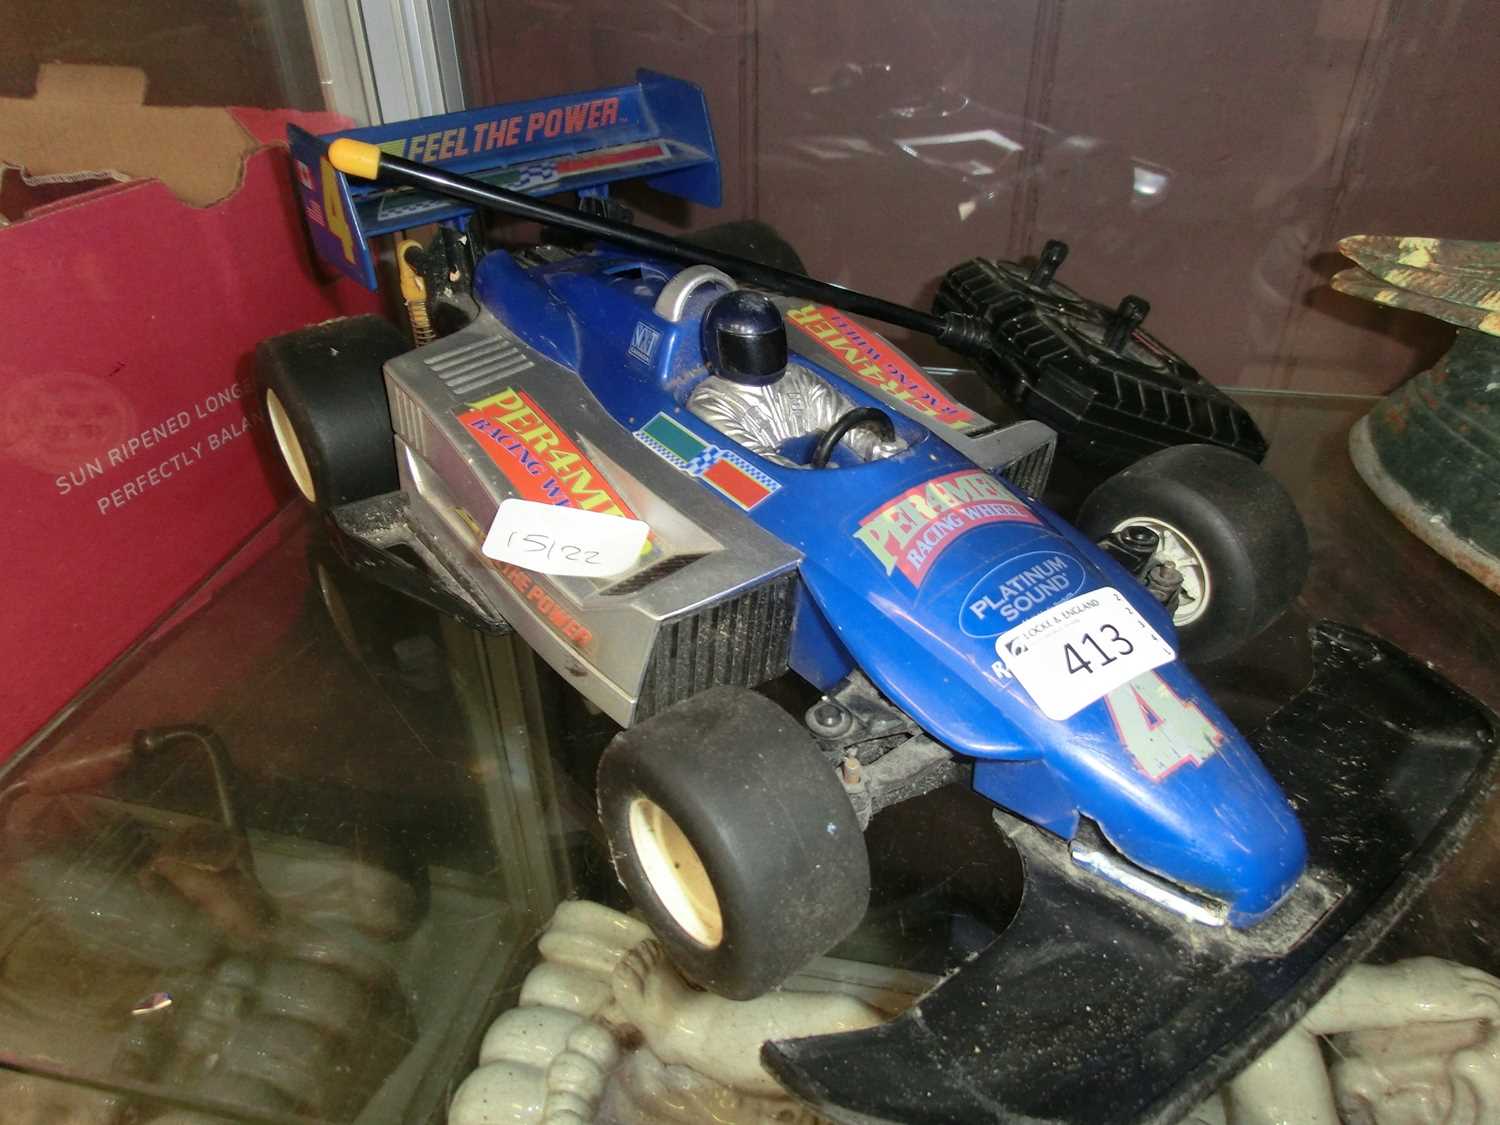 An RC racing car